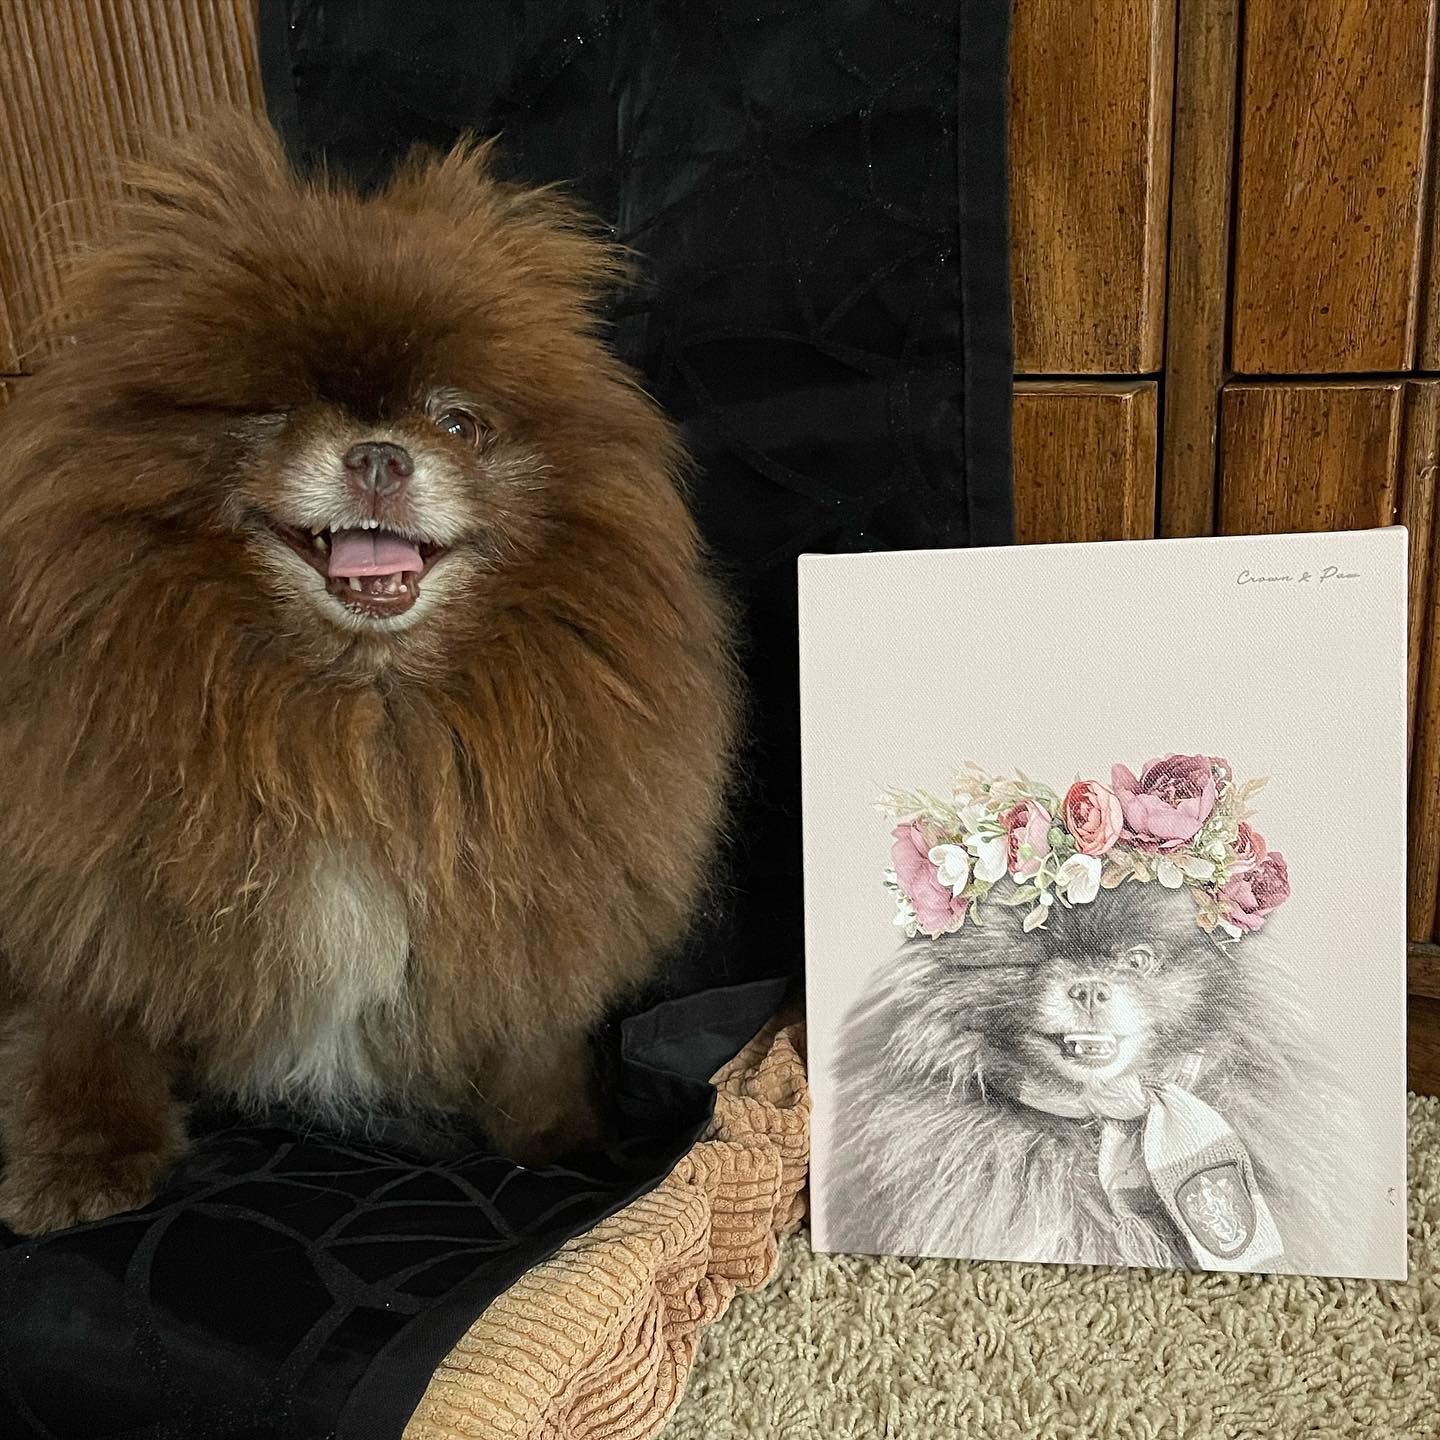 Floral Crown Pet Portrait - Custom Canvas